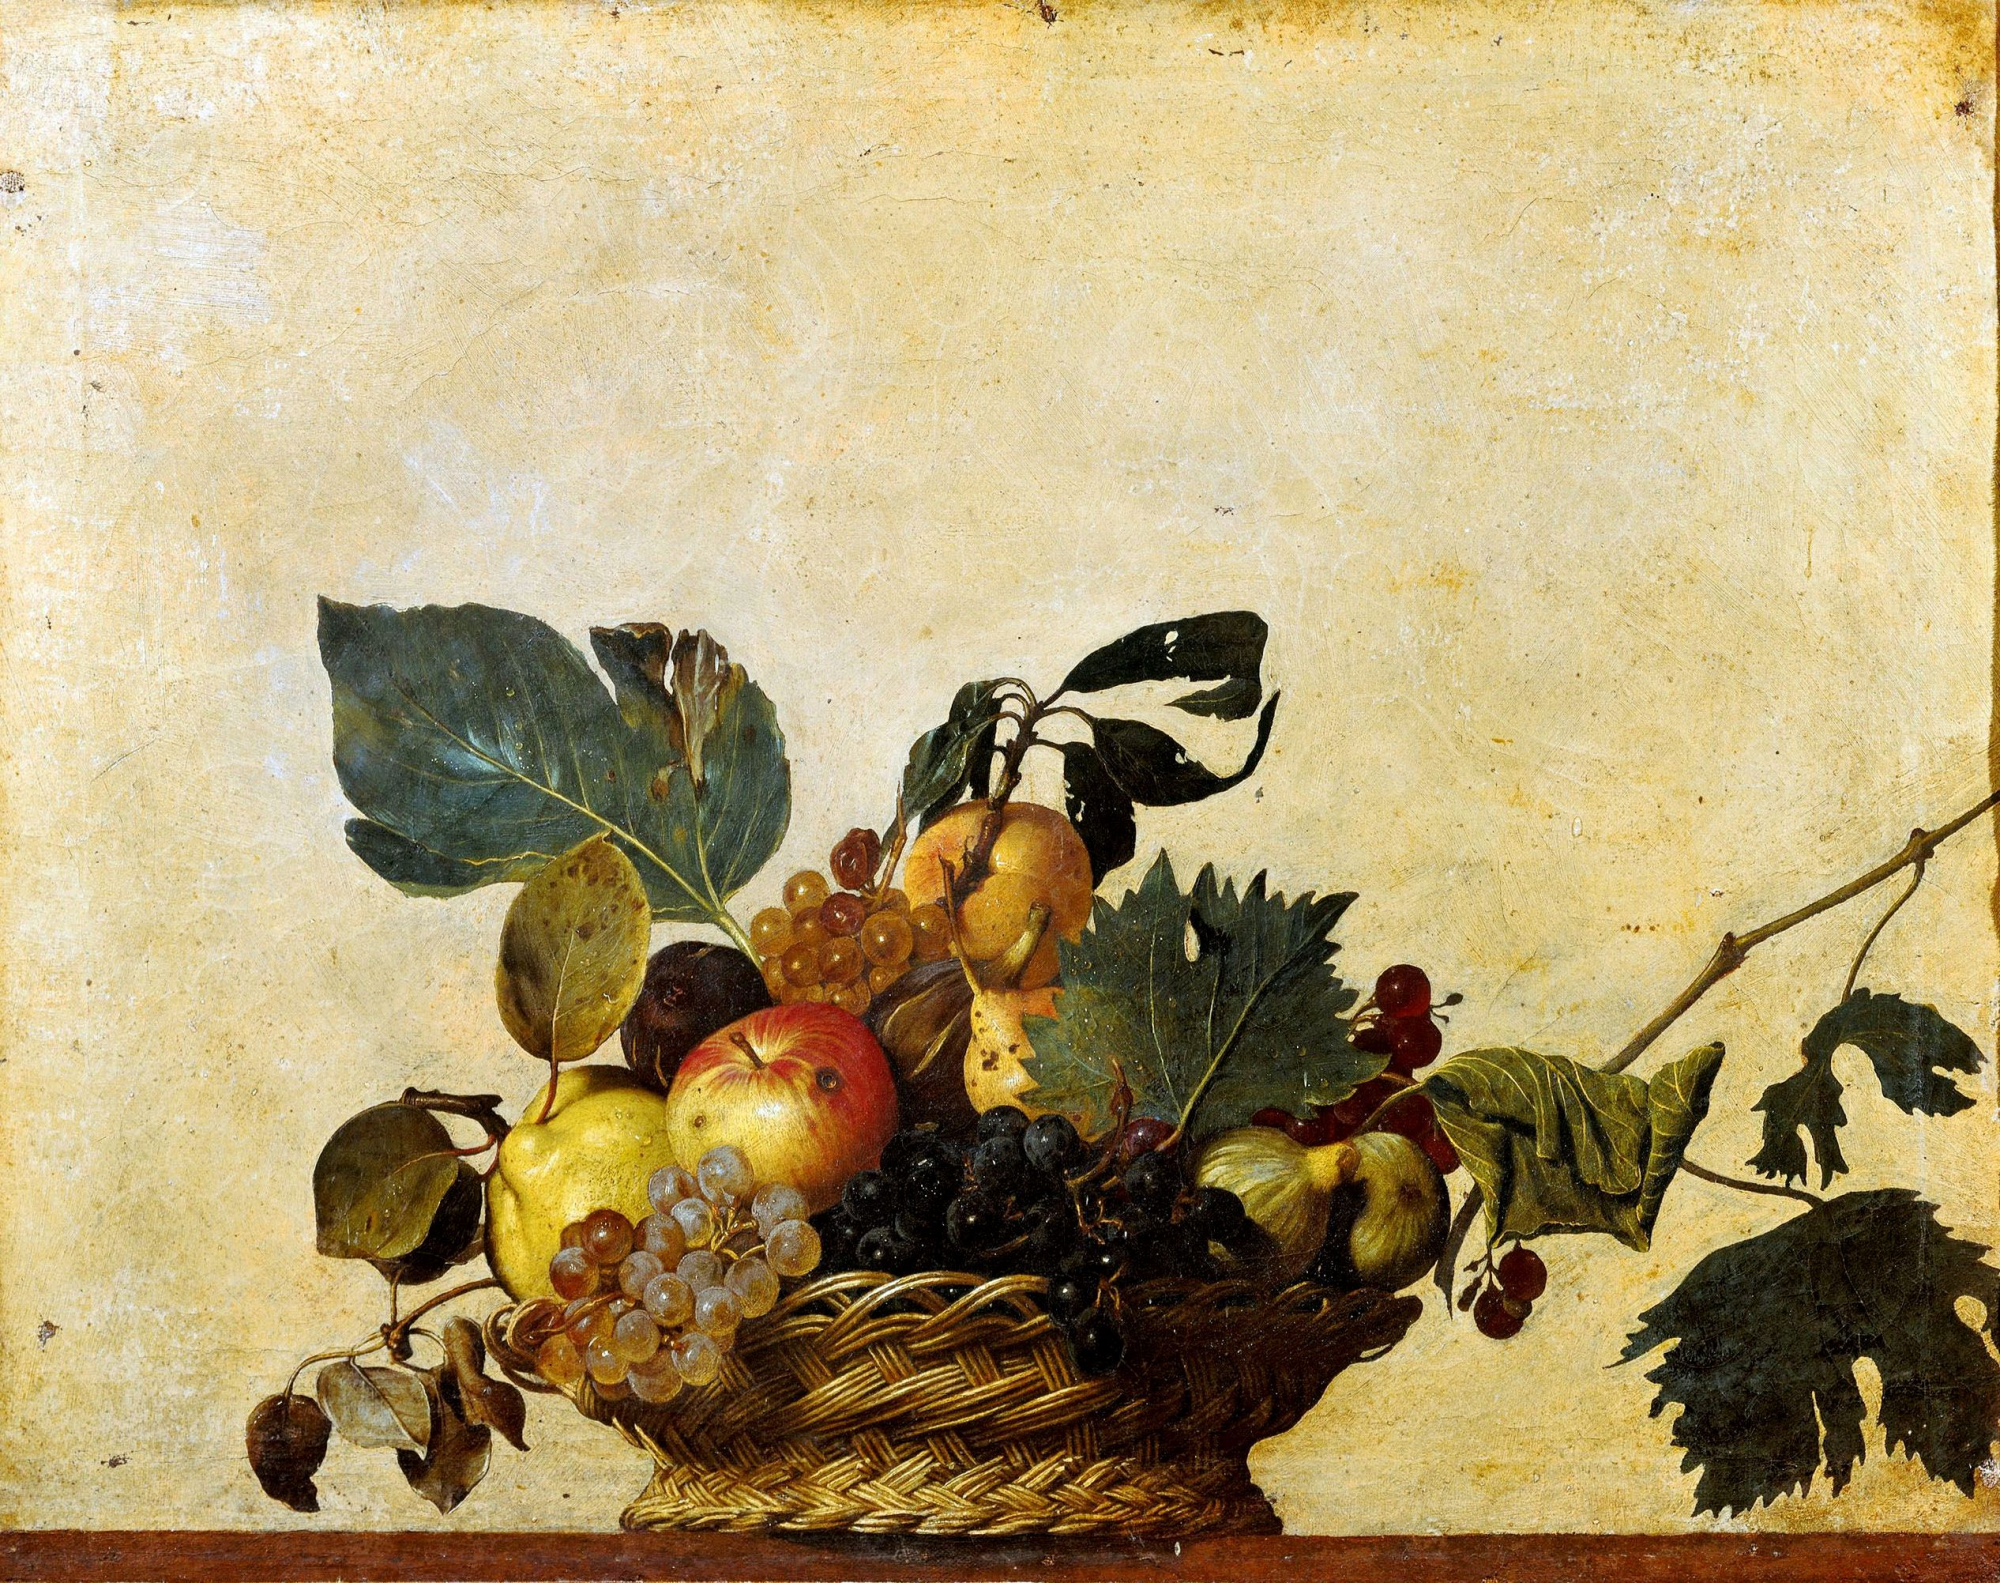 Cesta con frutas - - Historia Arte (HA!)